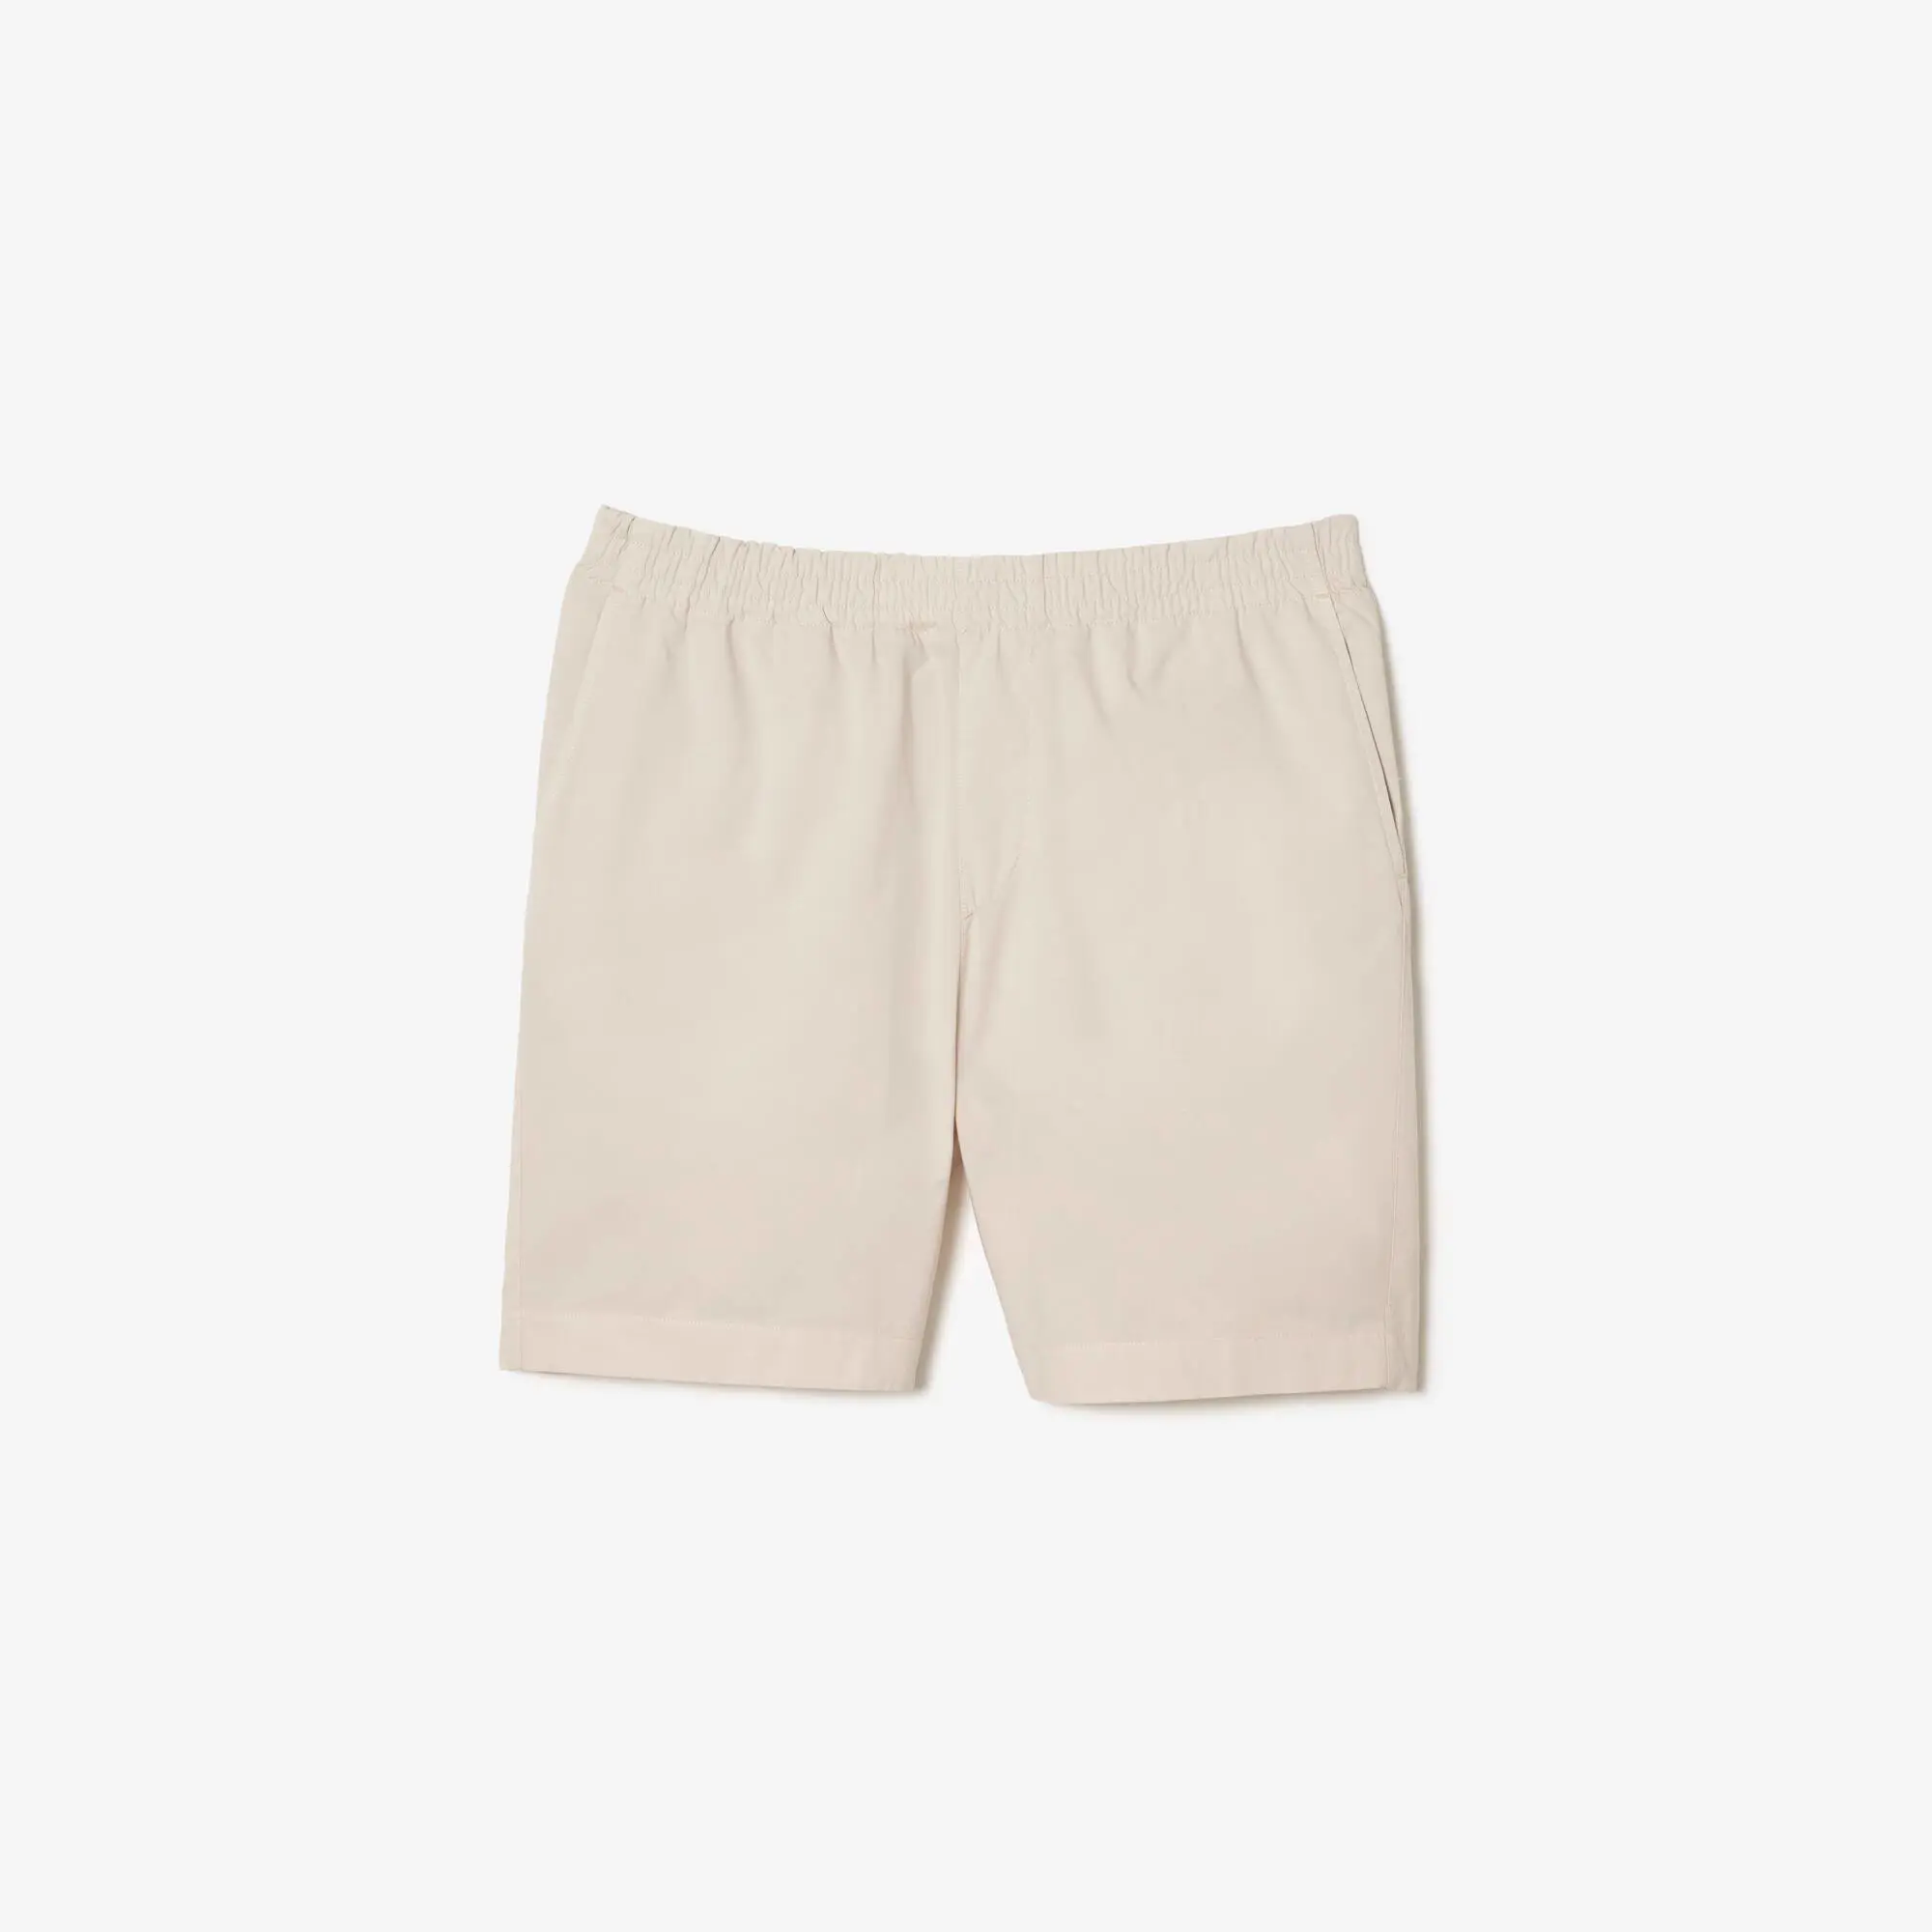 Lacoste Men’s Lacoste Organic Cotton Shorts. 2